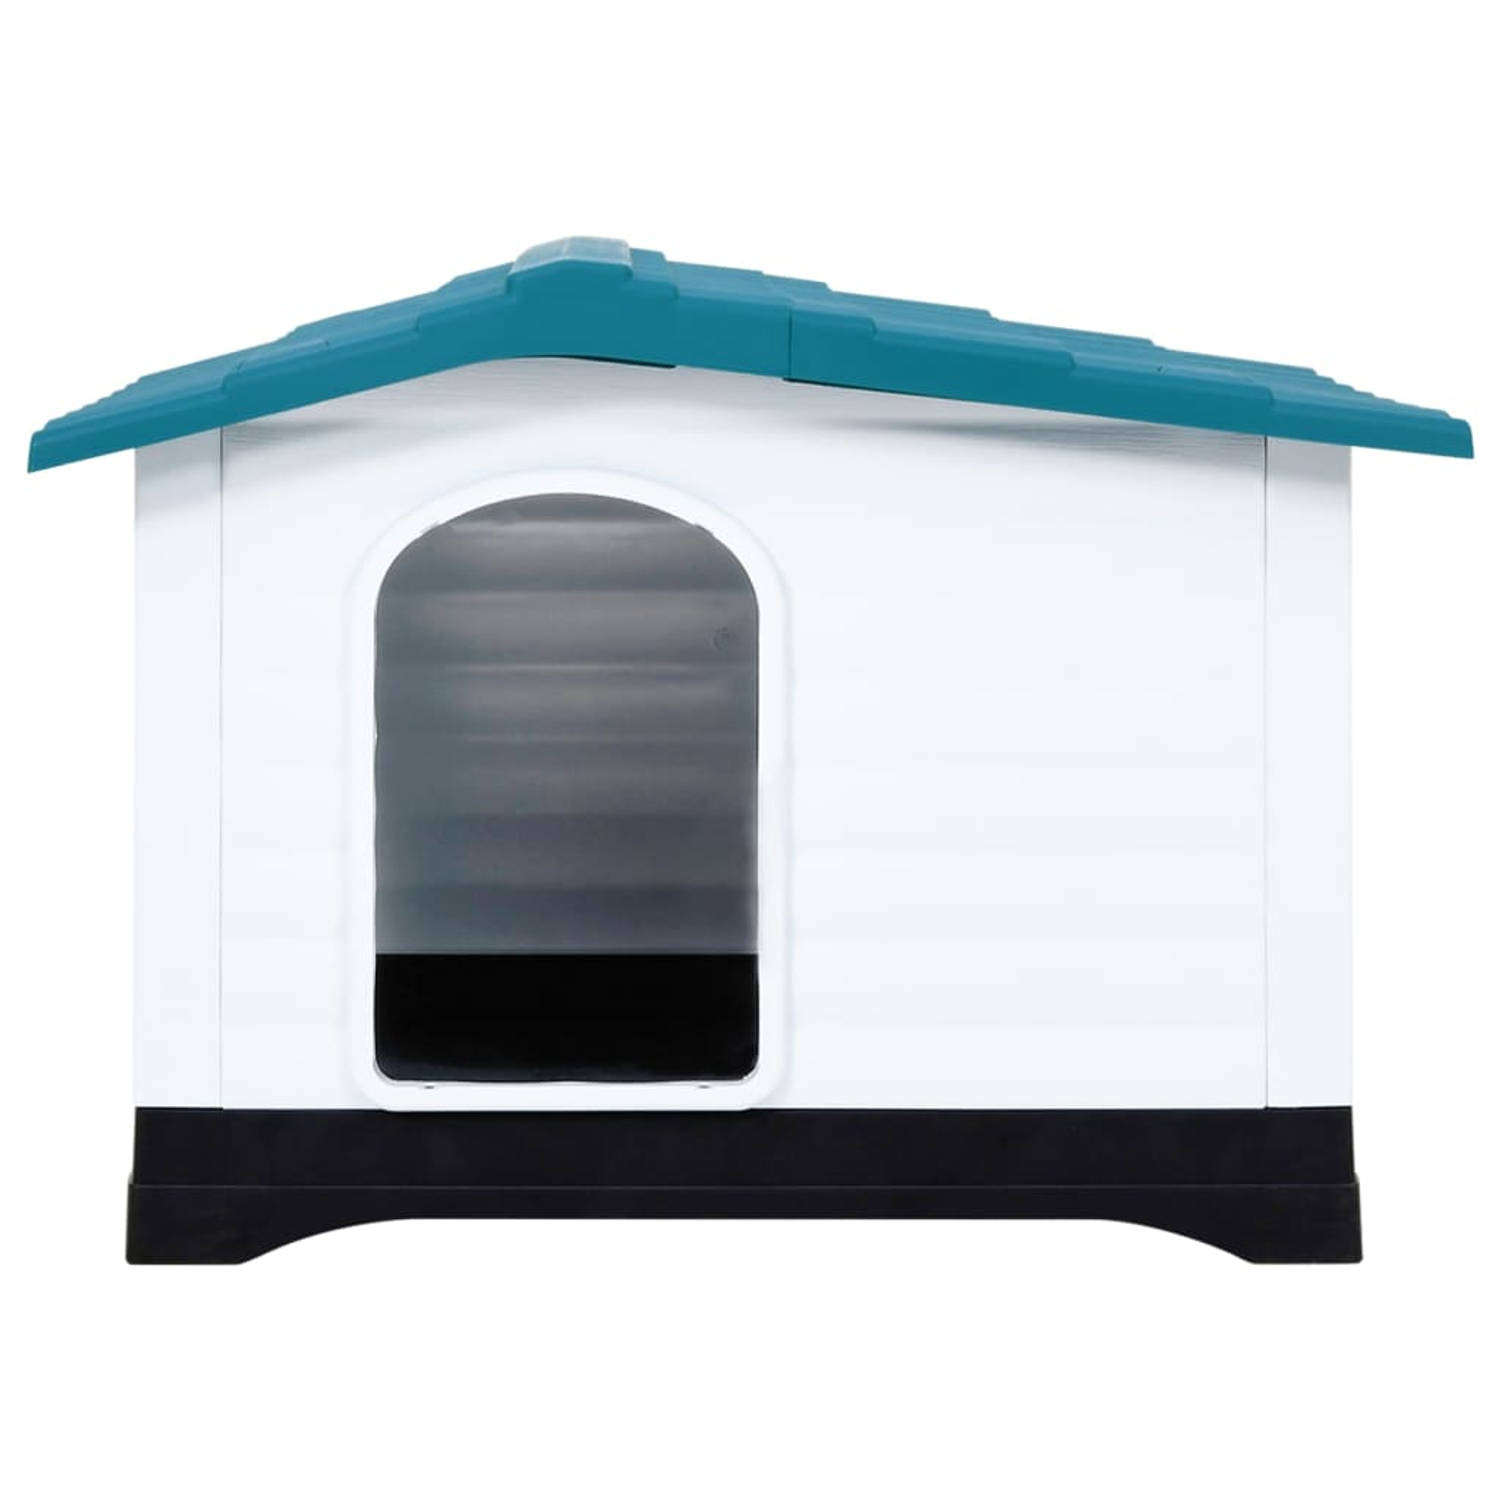 The Living Store PP Hondenhok - Duurzaam - Goede ventilatie - Praktisch dak - Verhoogde vloer - Blauw - wit - zwart - 90.5 x 68 x 66 cm